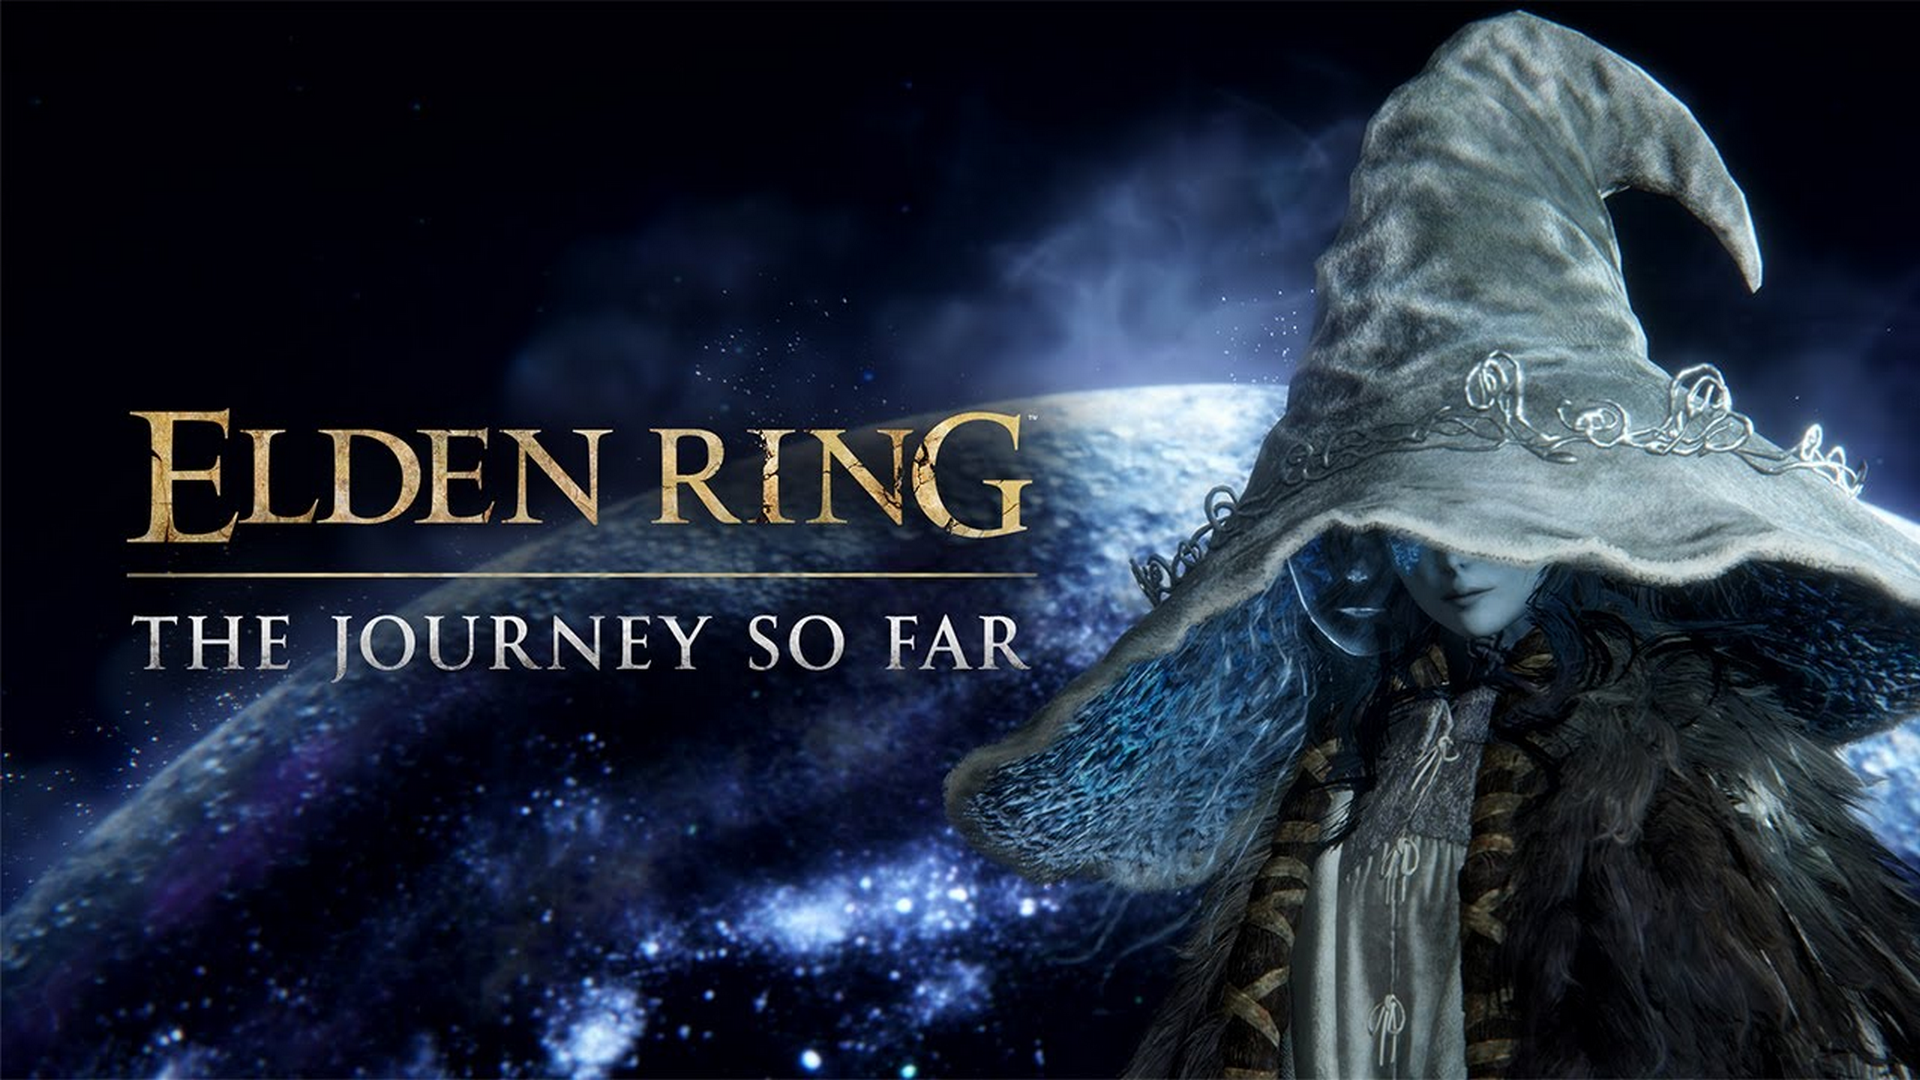 Elden Ring Story So Far Trailer Revealed